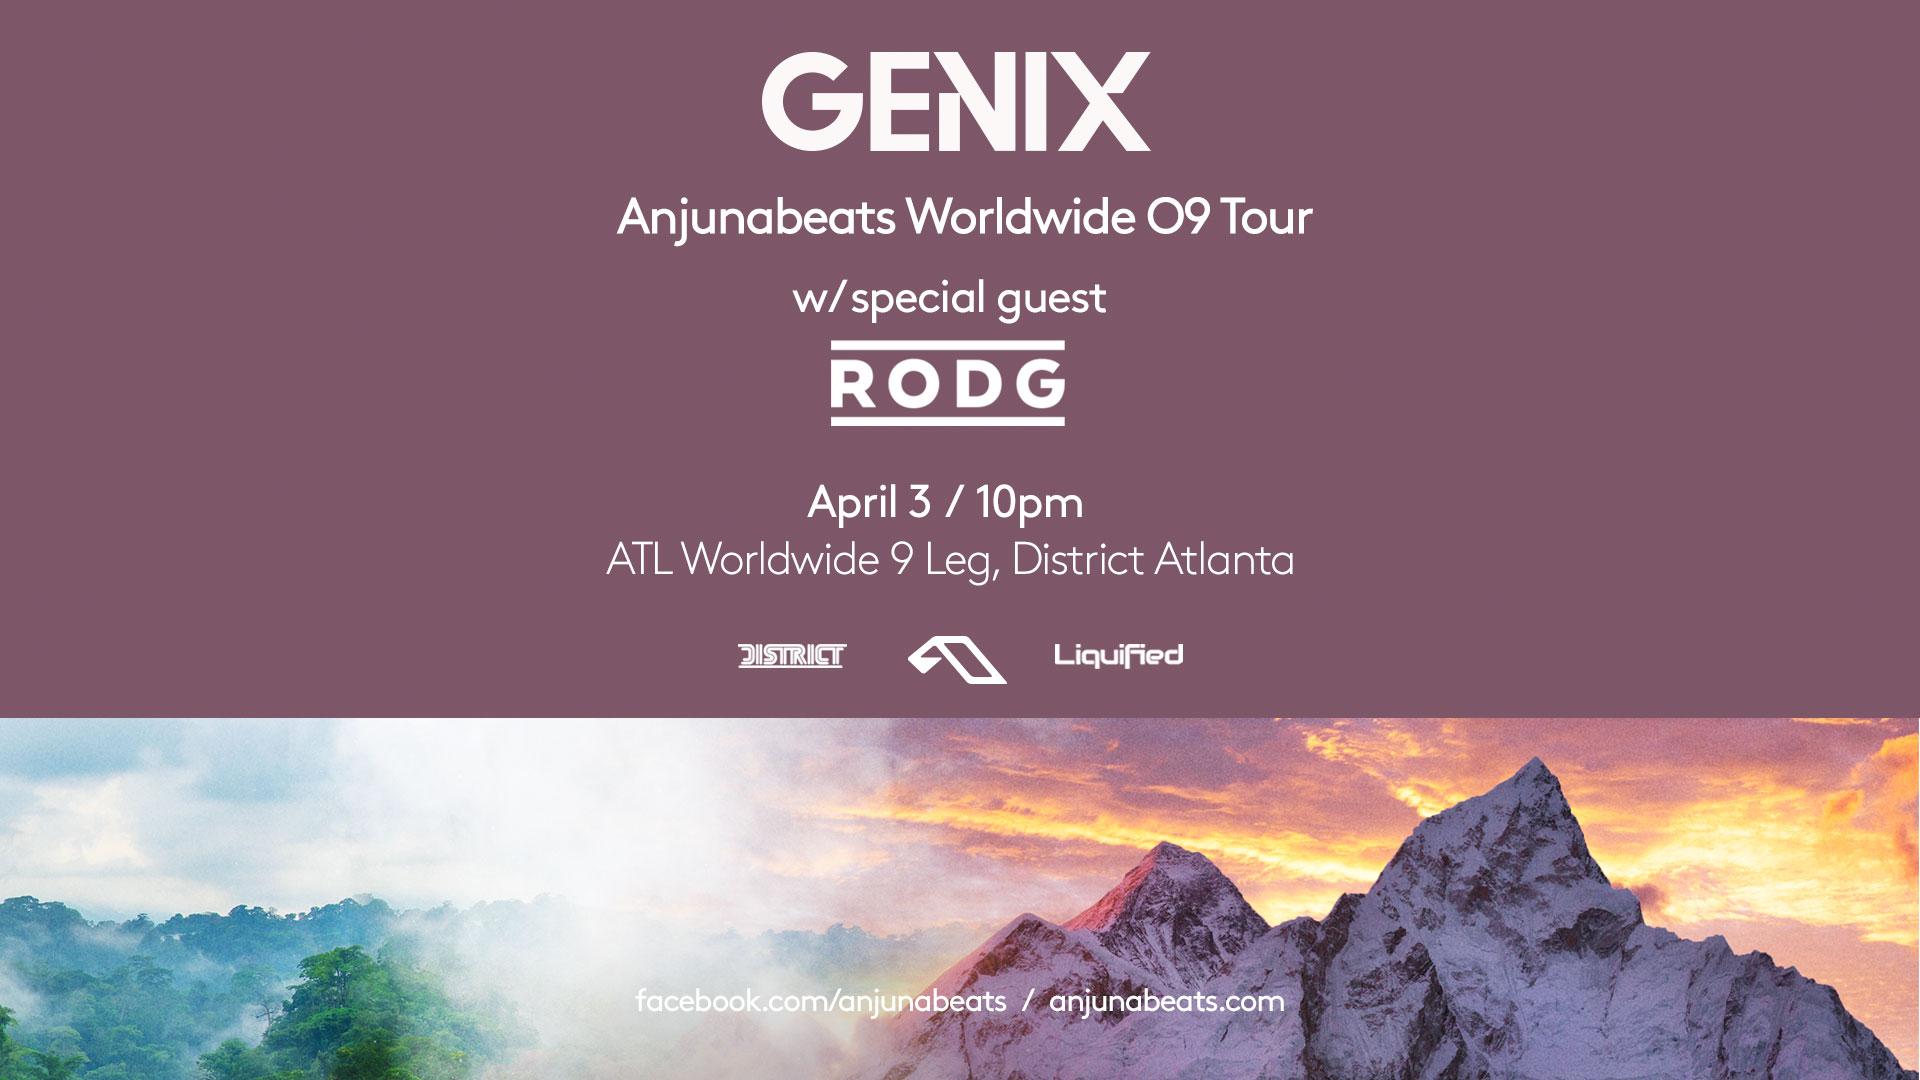 GENIX - Anjunabeats Worldwide 09 Tour | Friday July 17th 2020